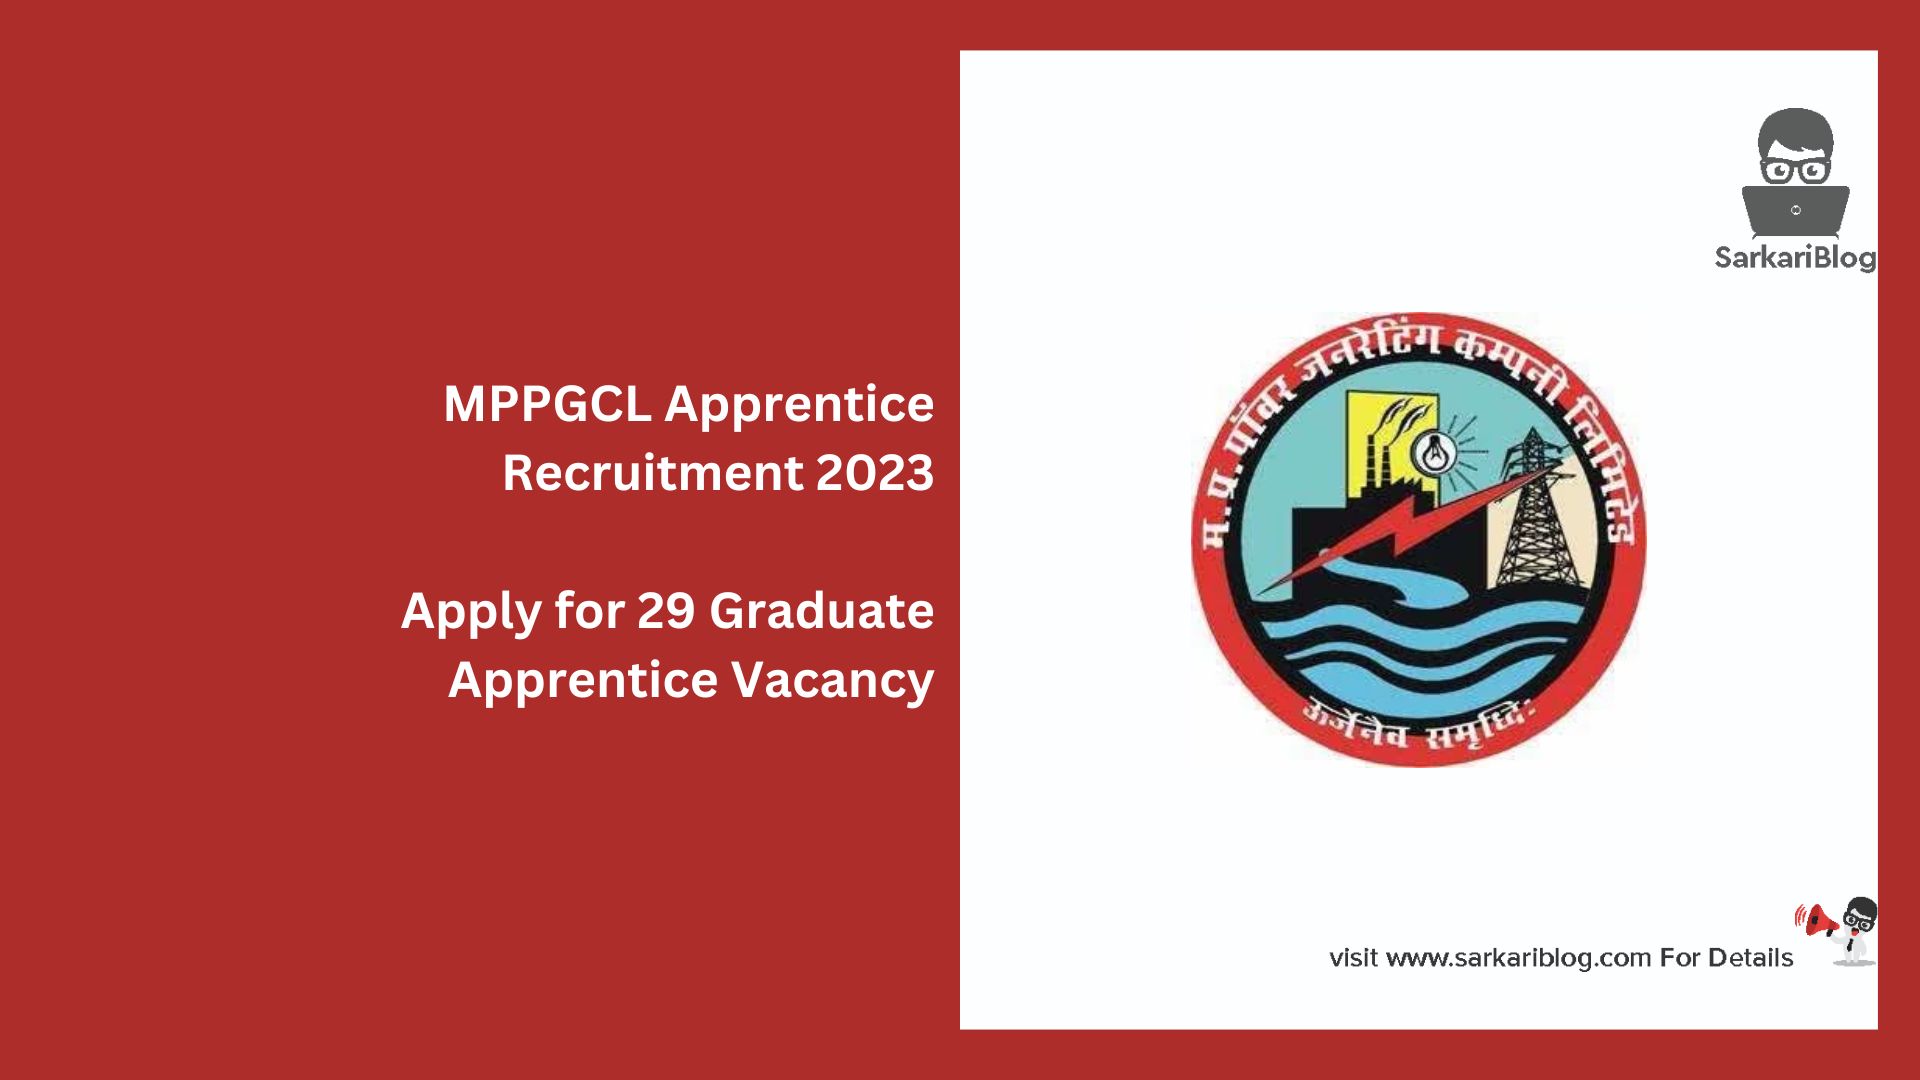 MPPGCL Apprentice Recruitment 2023